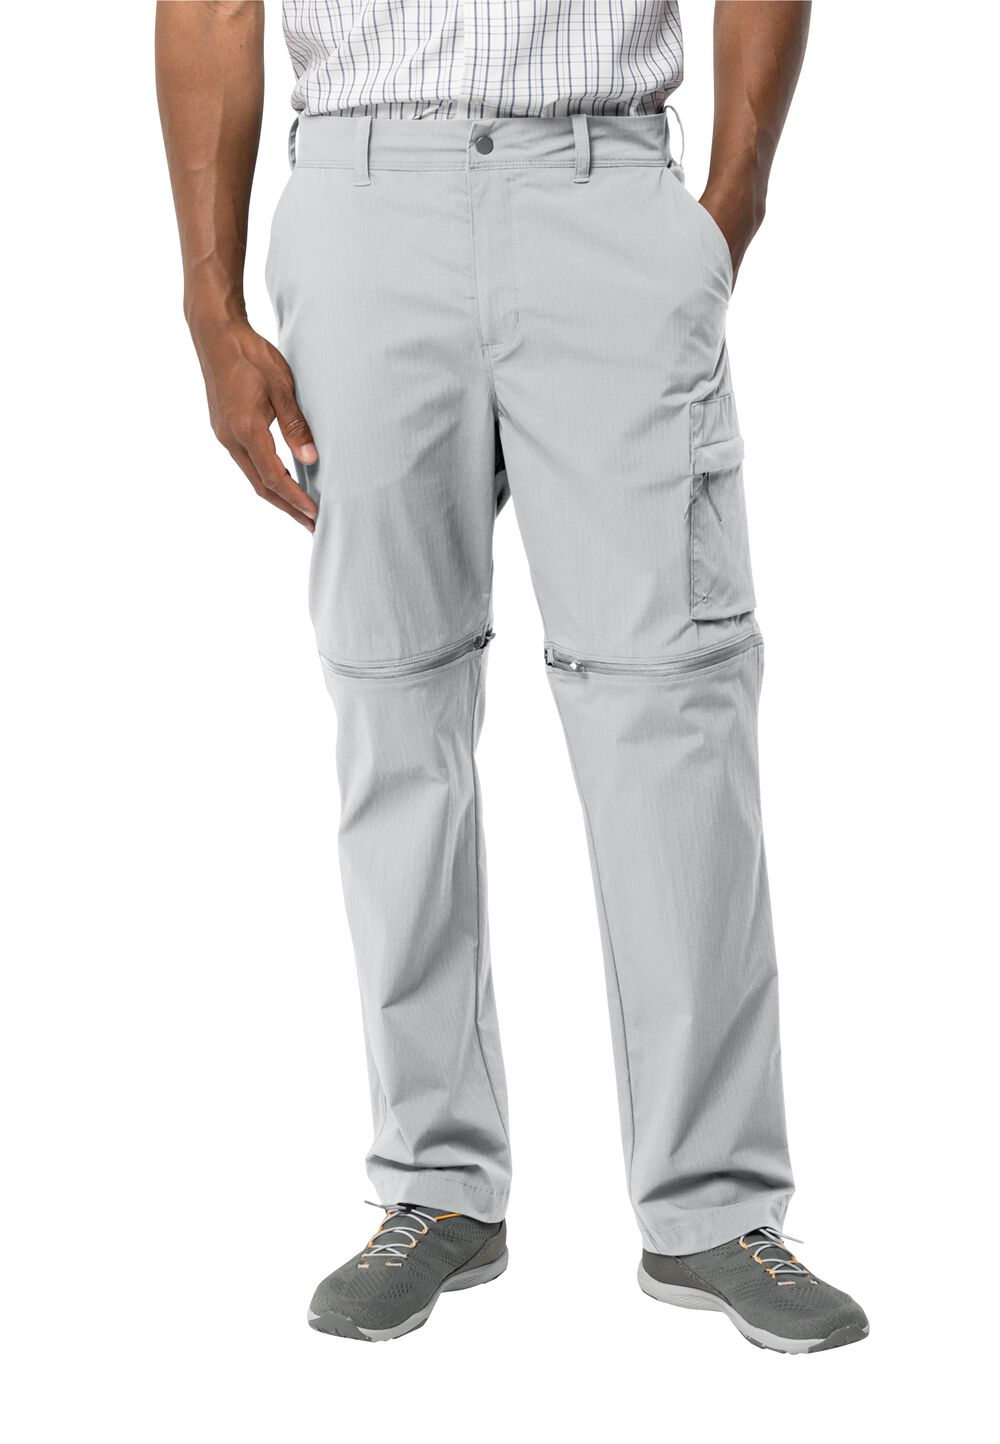 Jack Wolfskin Wanderthirst Zip Pants Men Zip-Off-broek Heren 48 grijs cool grey